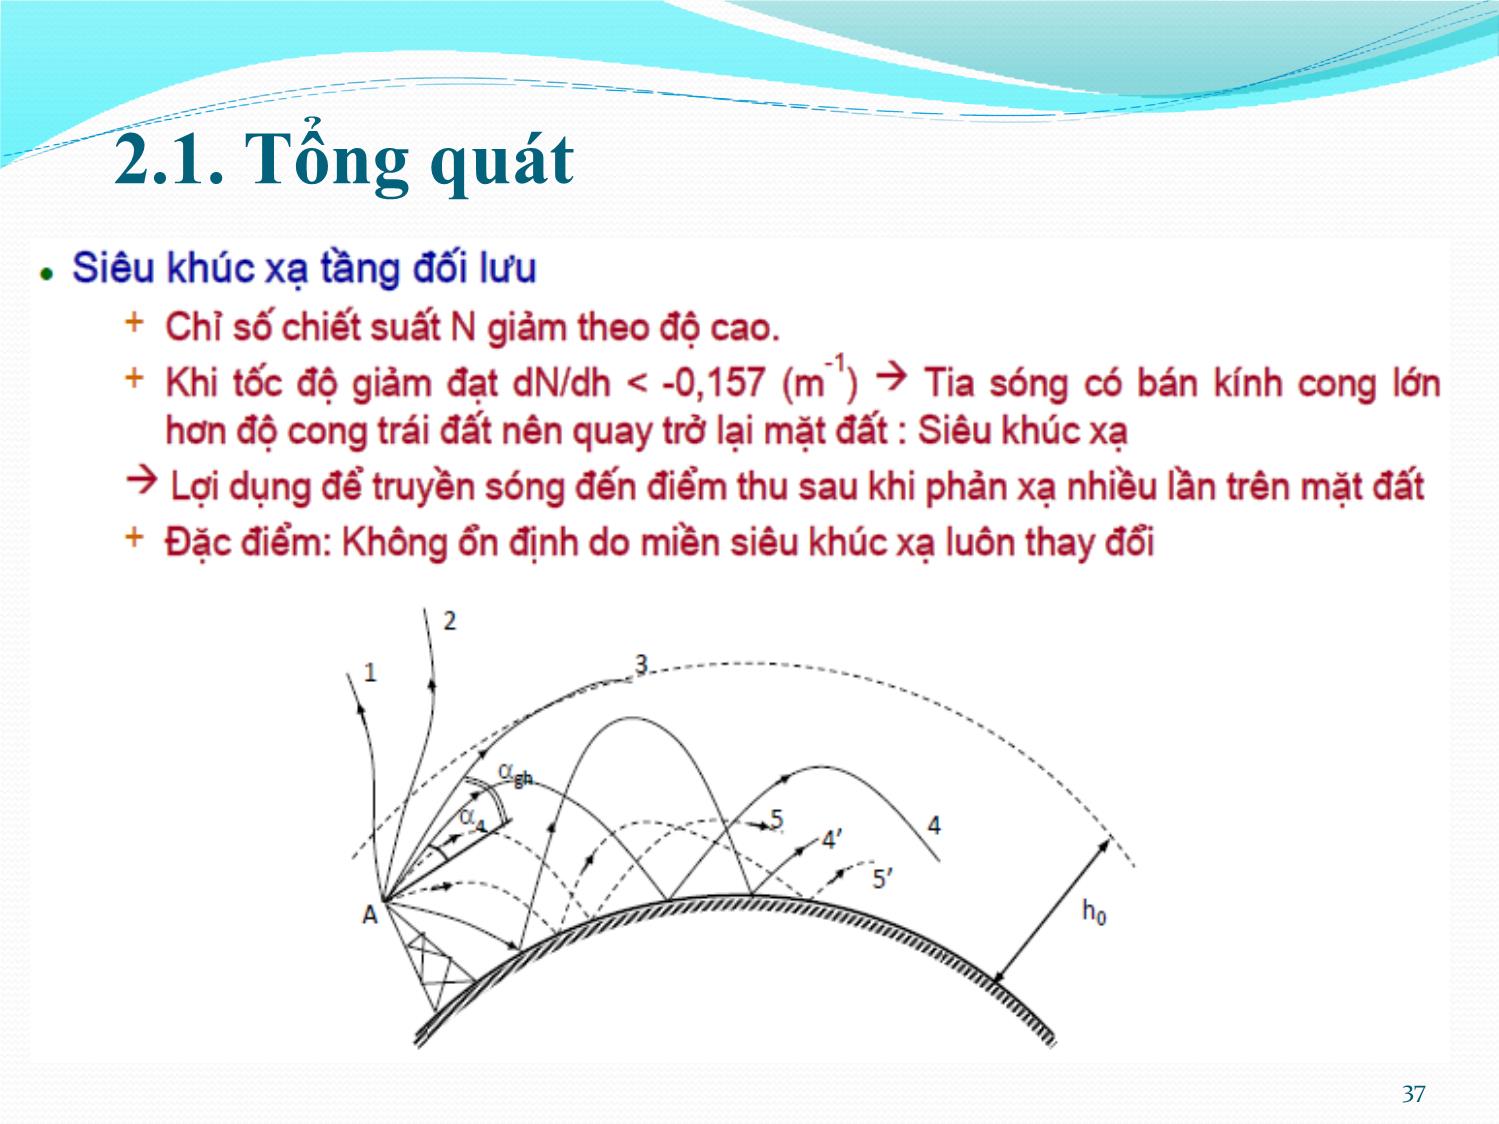 Bài giảng Kỹ thuật anten và truyền sóng - Chương 2: Truyền lan sóng cực ngắn - Nguyễn Thị Linh Phương trang 4